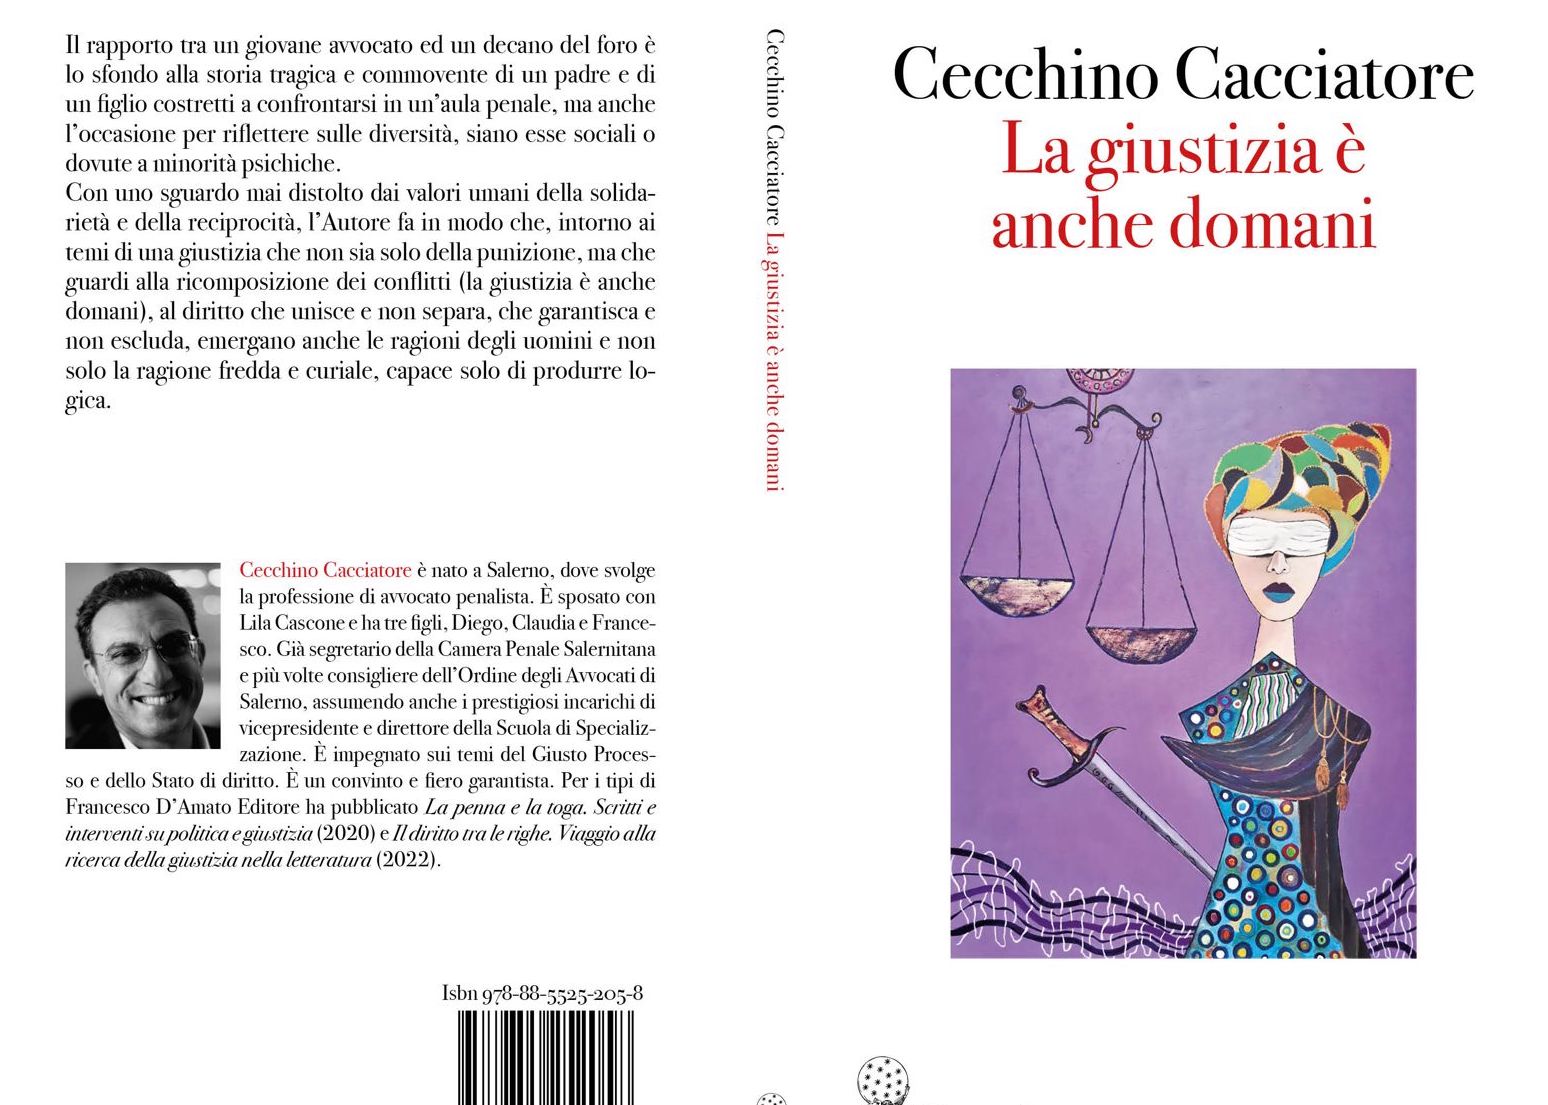 «La giustizia è anche domani» nel romanzo dell’avvocato salernitano Cecchino Cacciatore